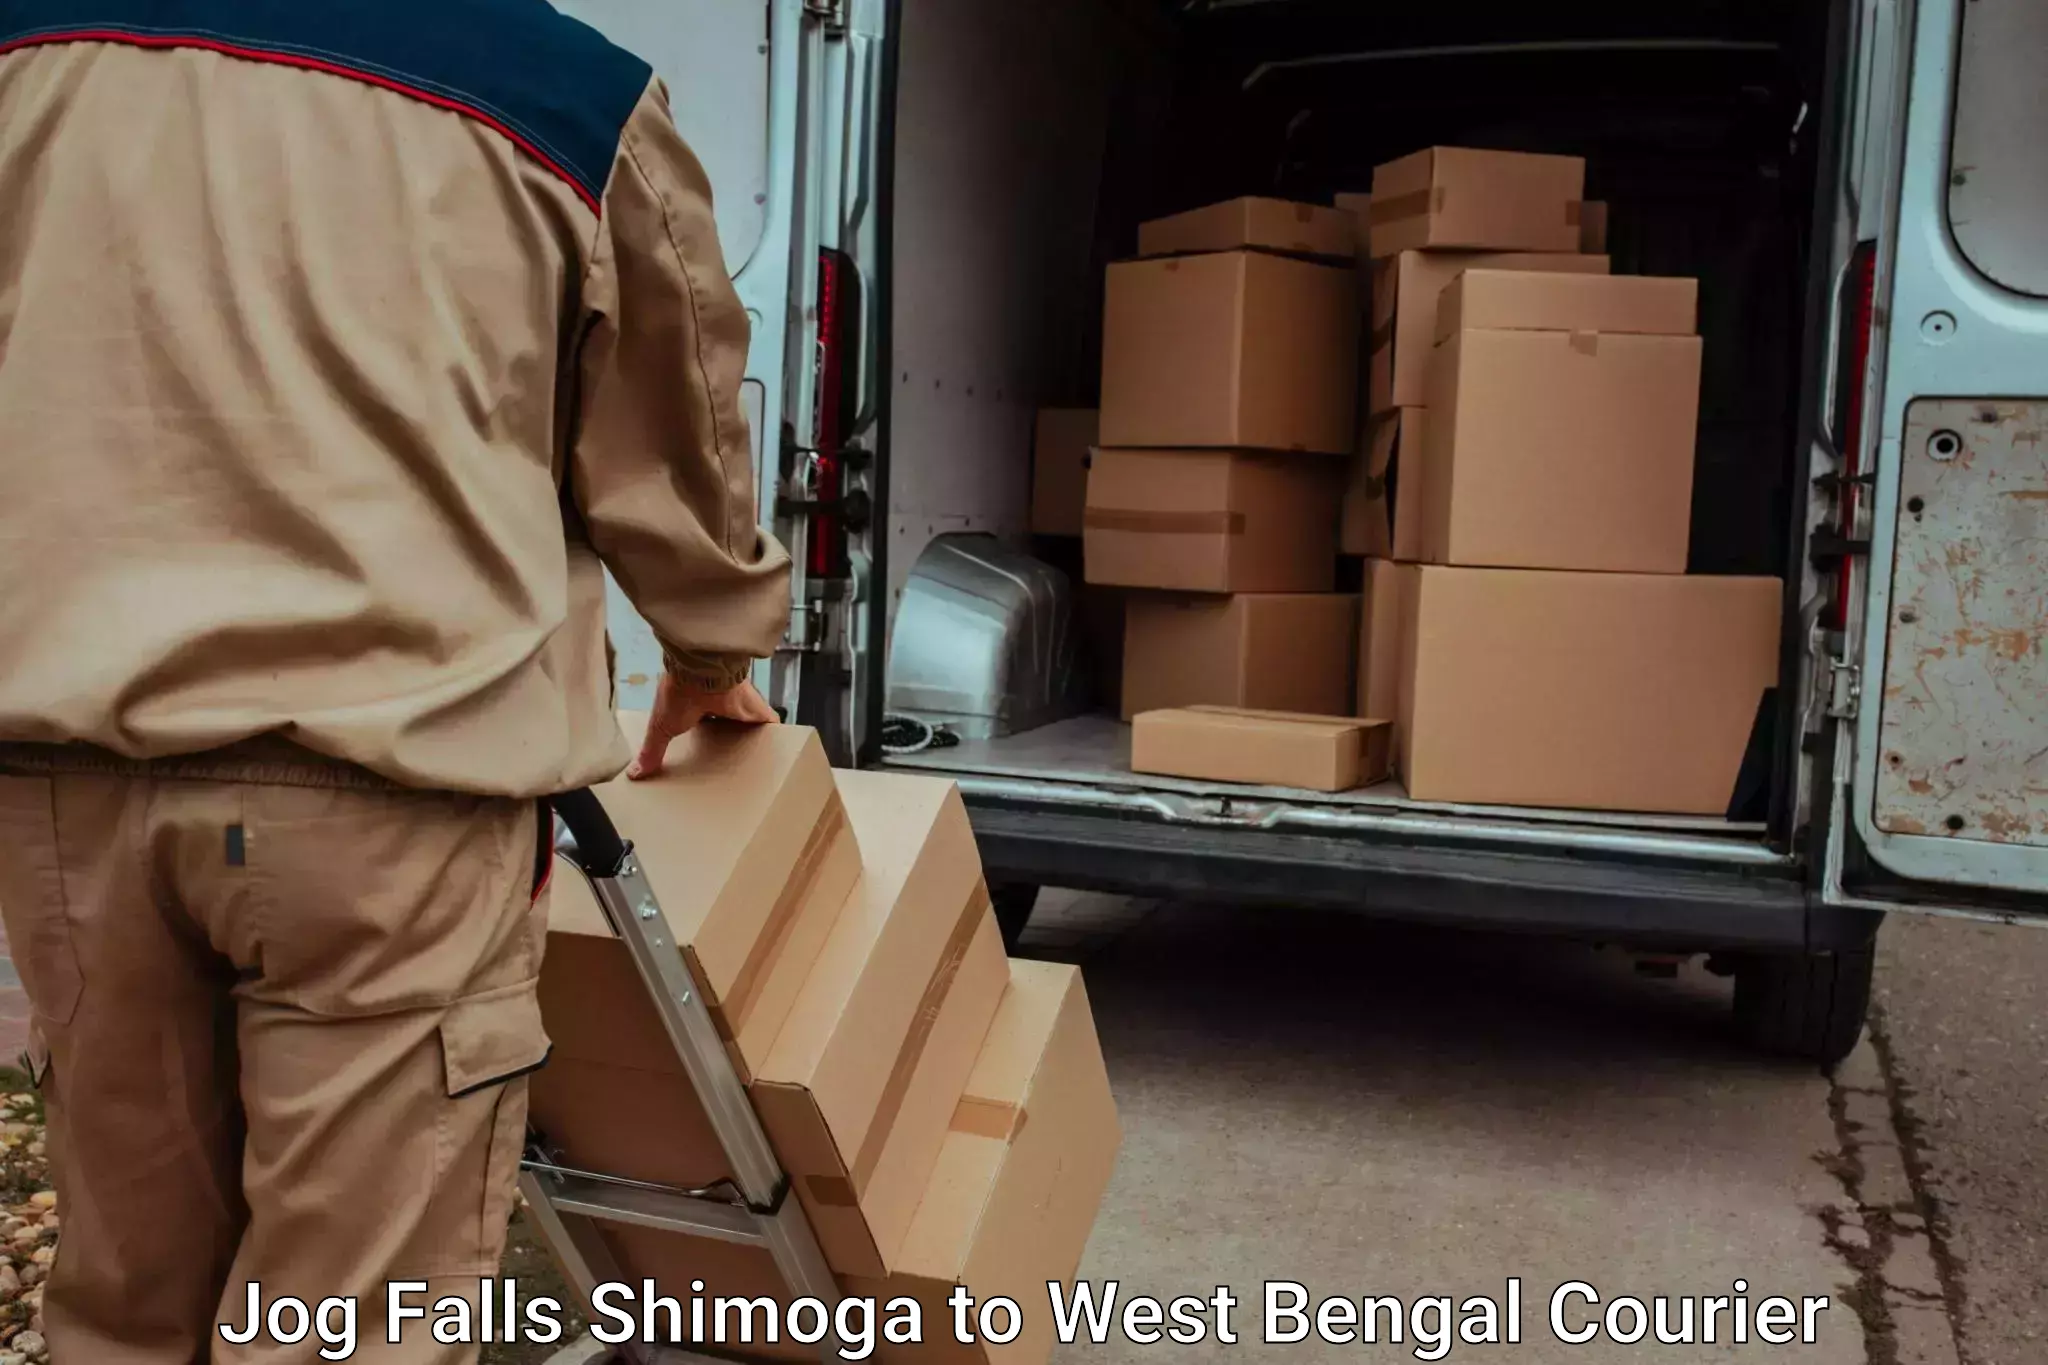 Baggage transport network in Jog Falls Shimoga to Hemtabad